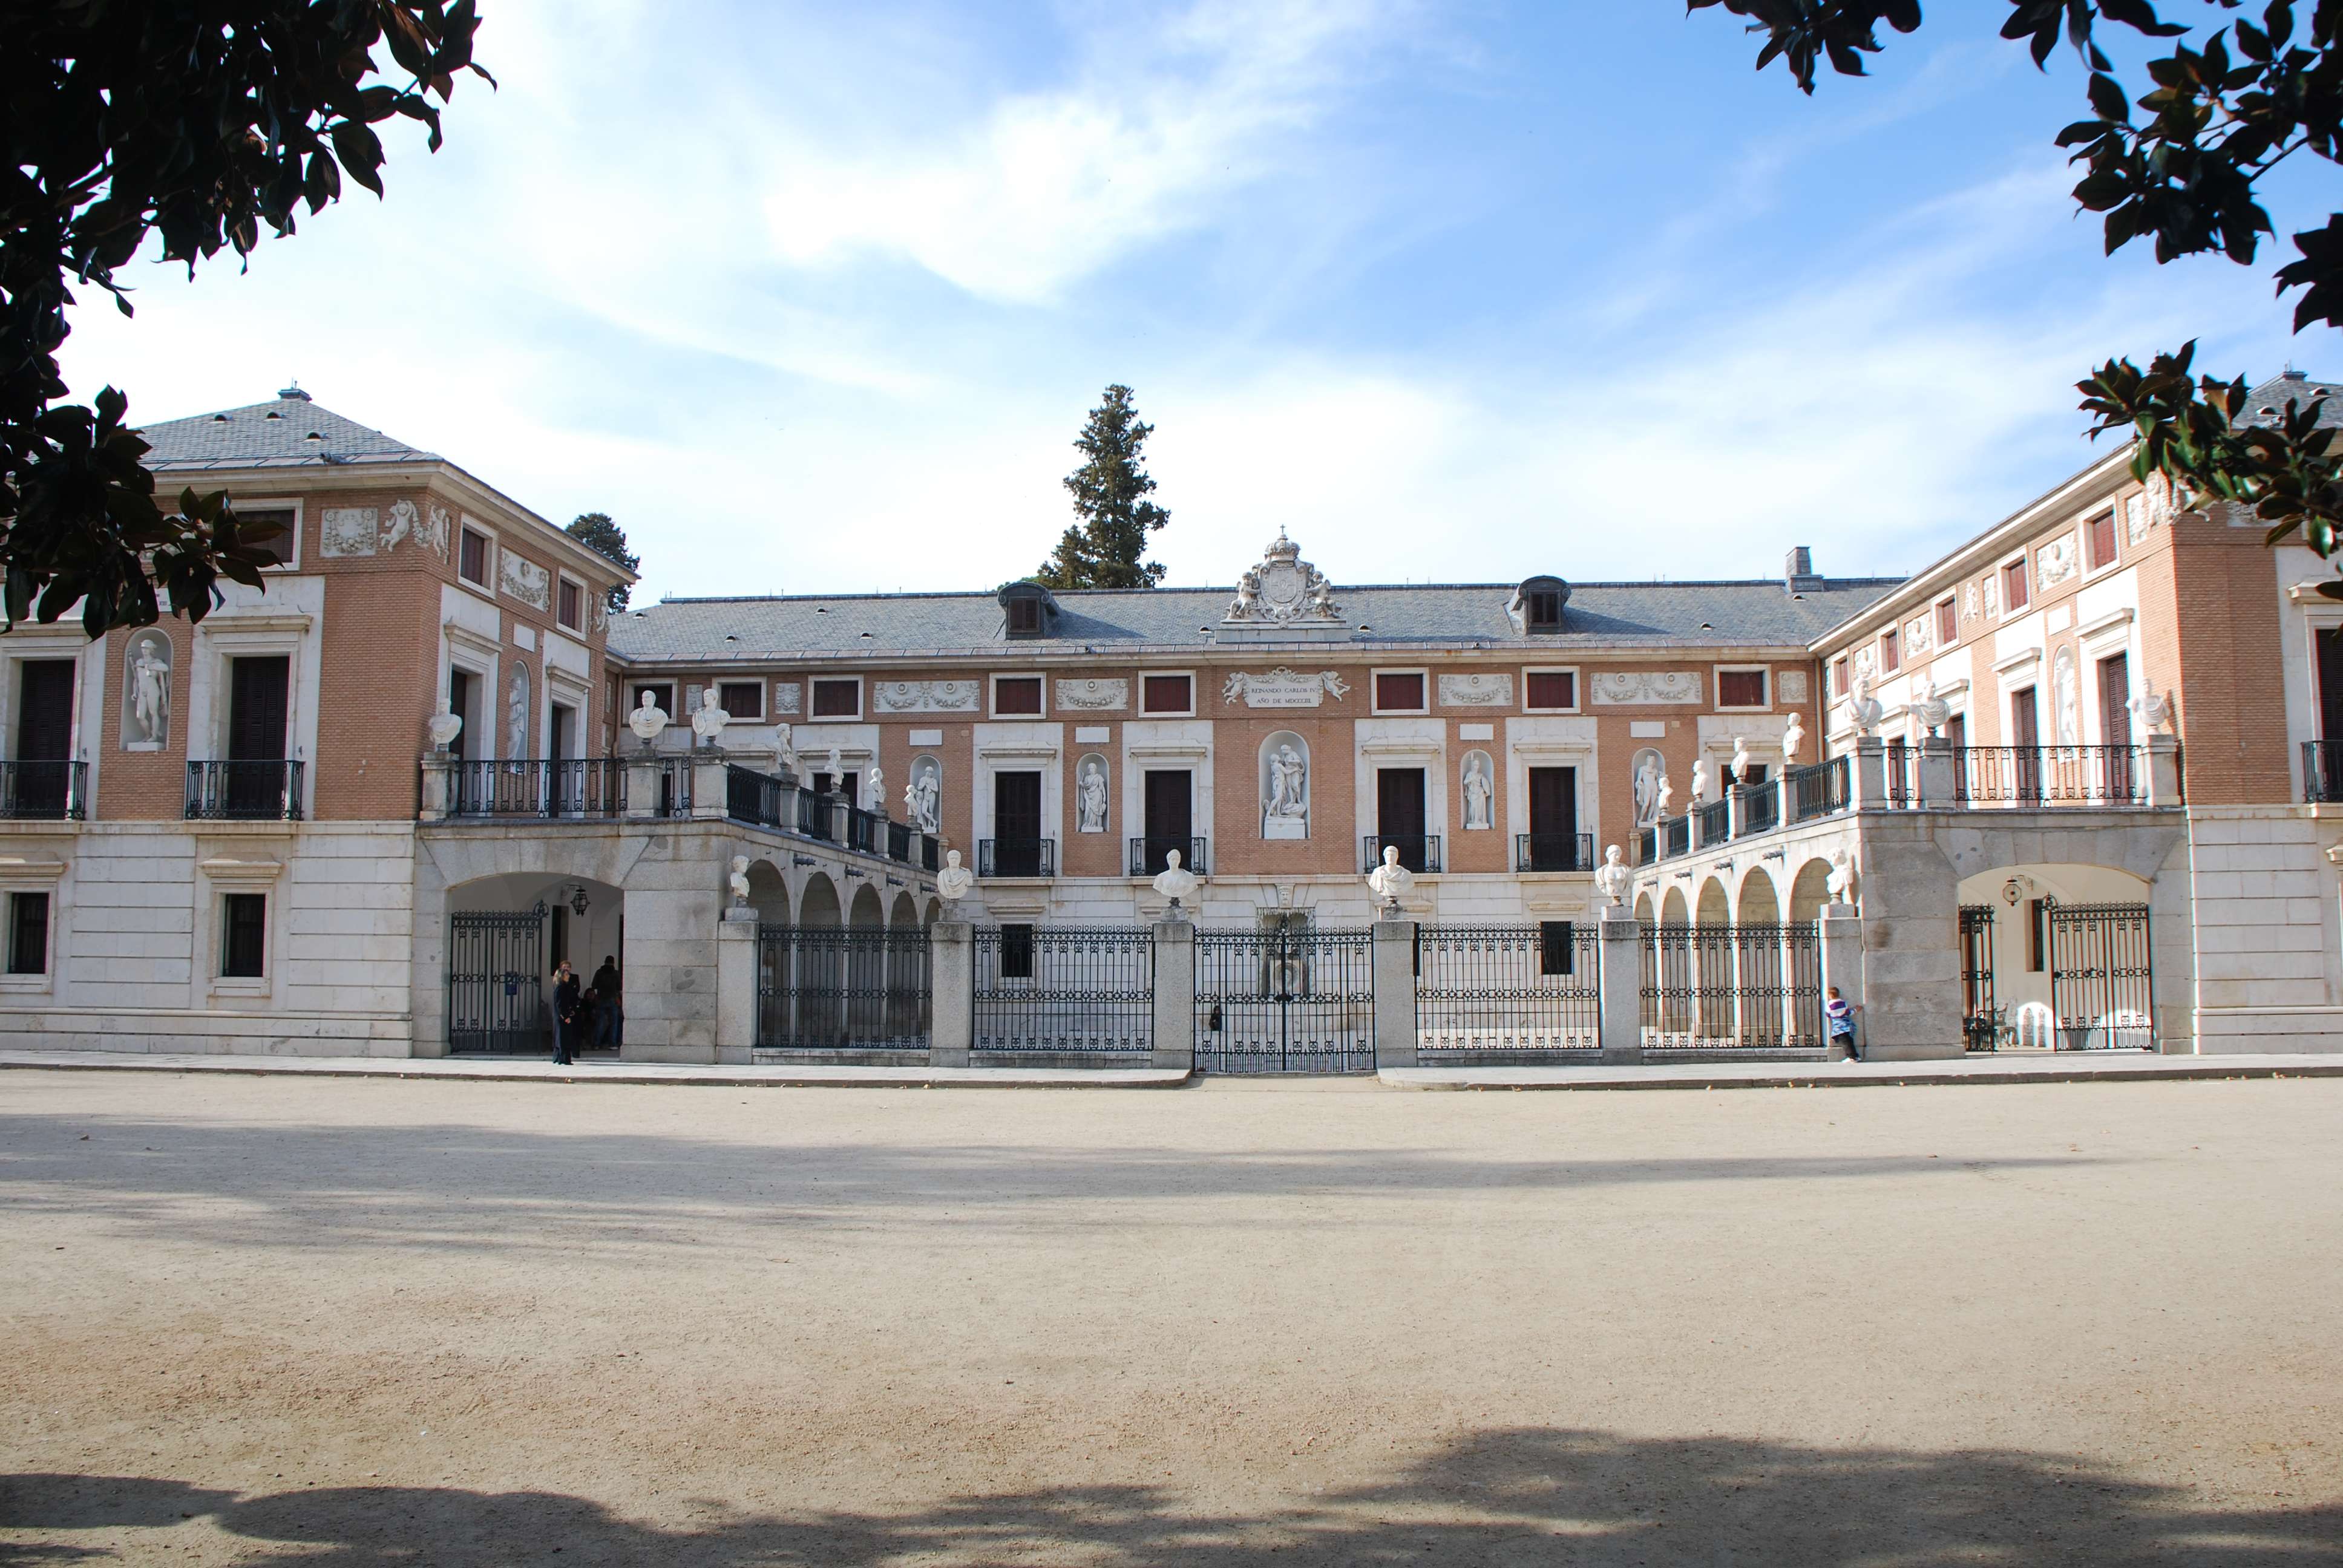 Excursiones desde Madrid - Blogs de España - Aranjuez (2)